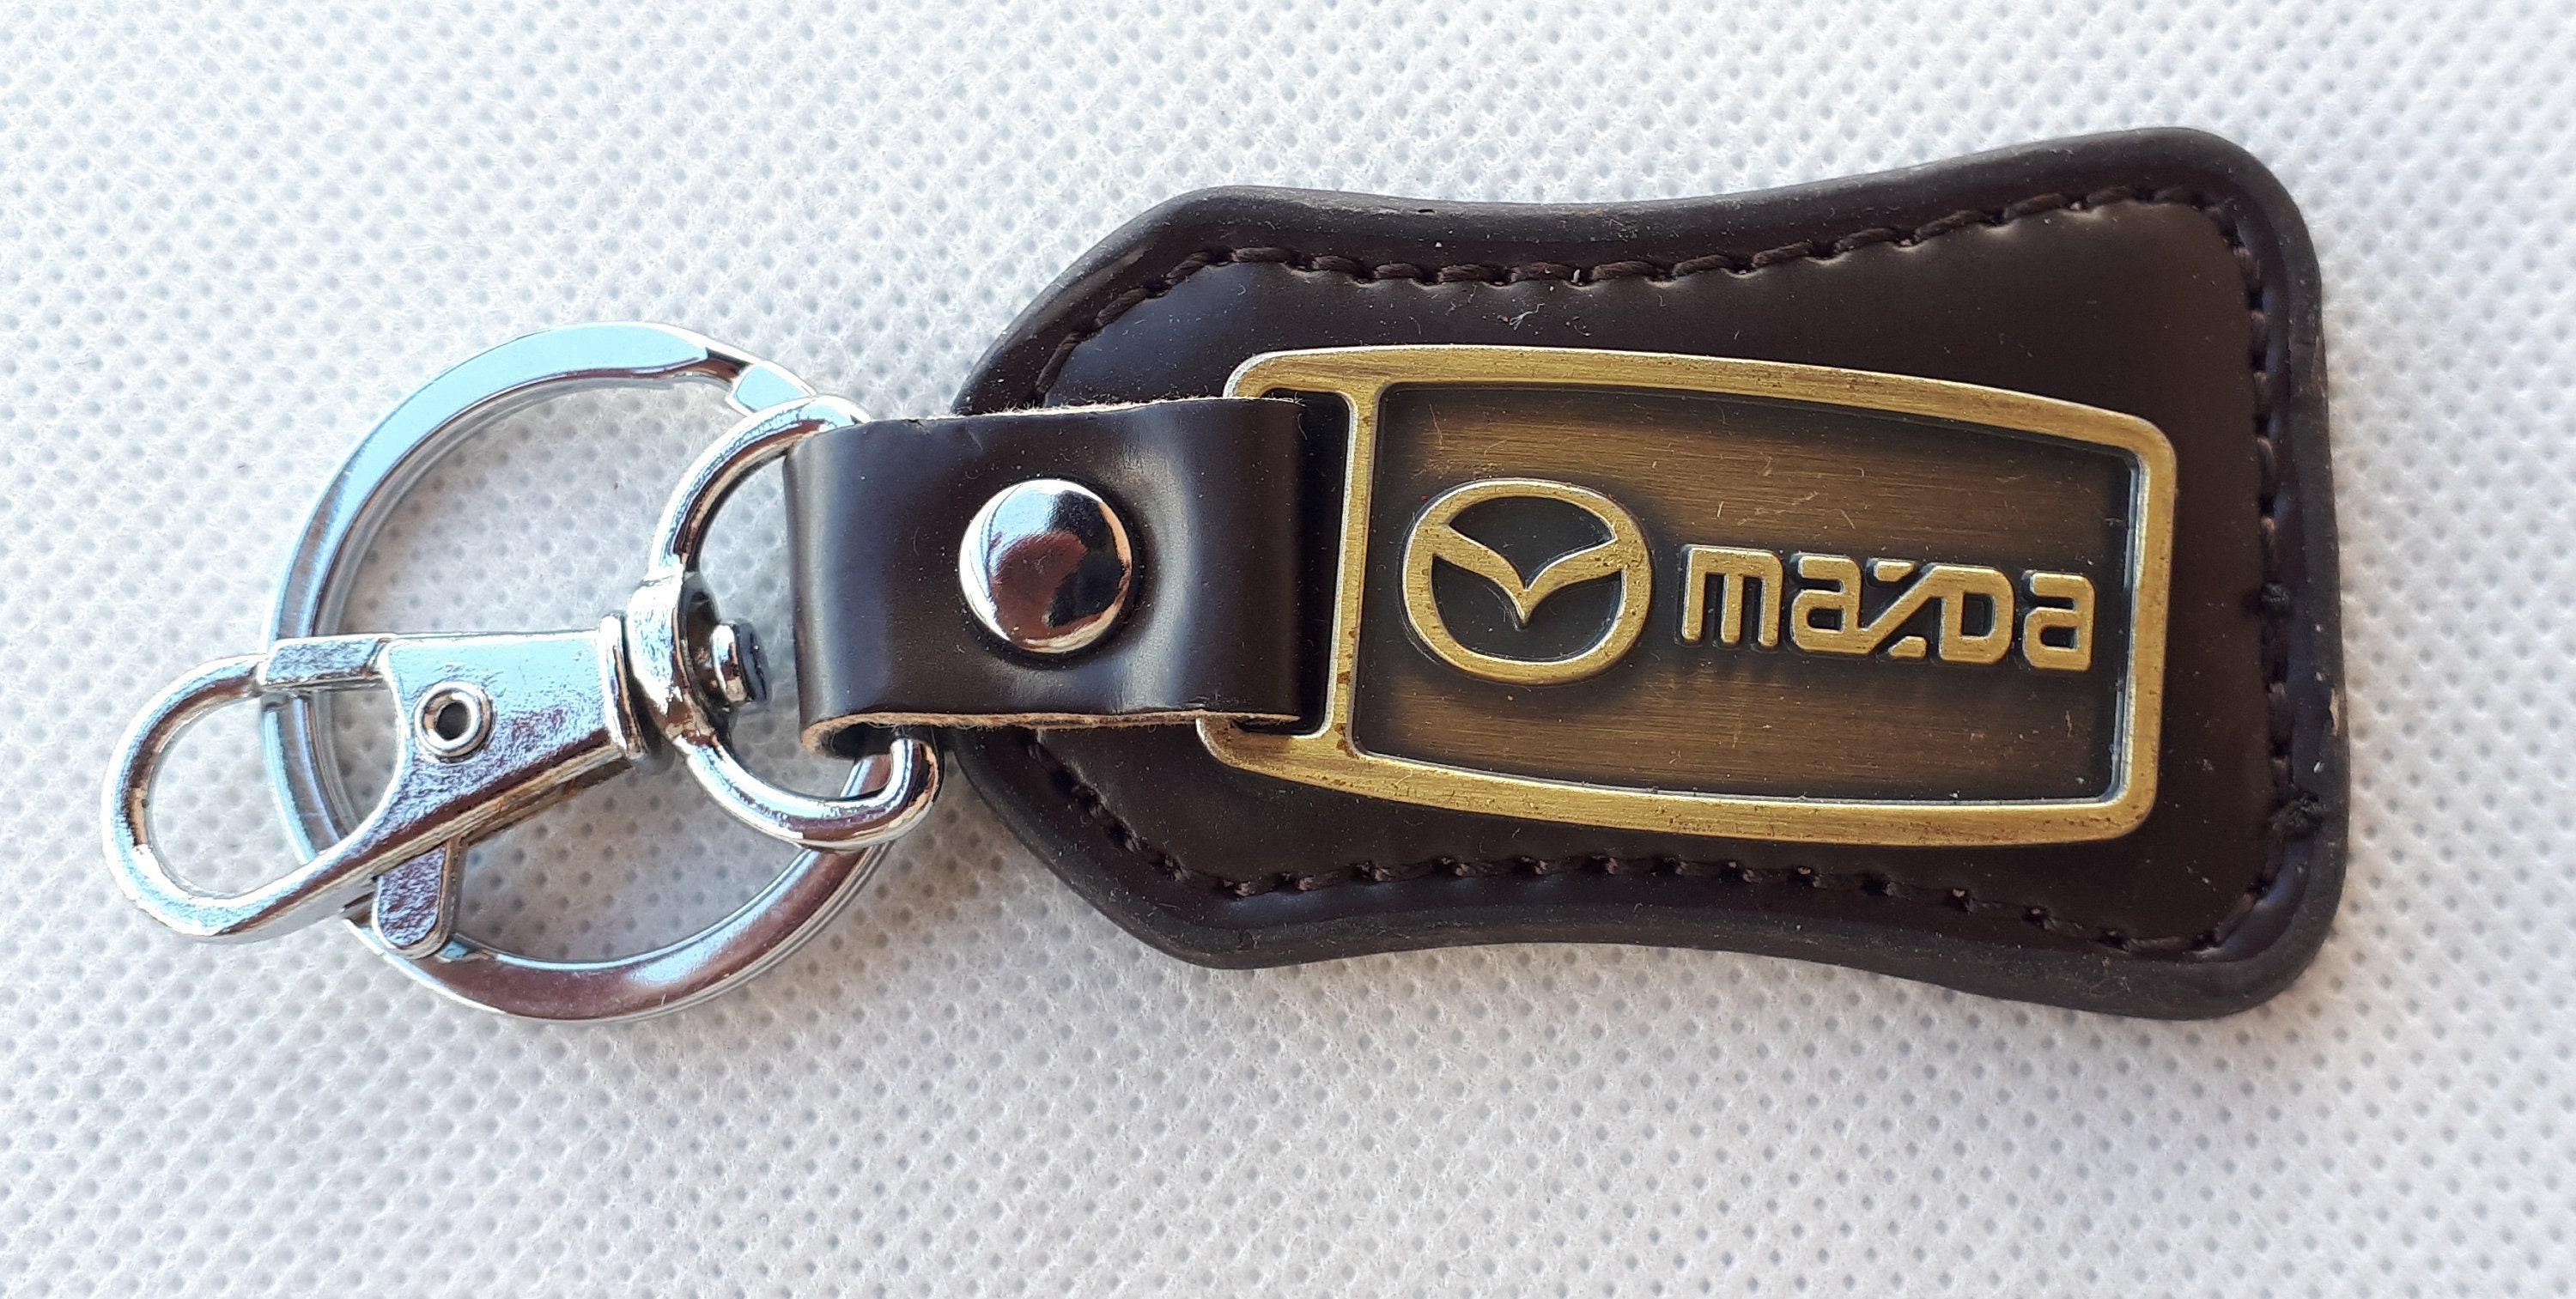 Schlüsselanhänger Mazda, Metall, Tropfenform, schwarz/silber, weitere  Fahrzeughersteller, Schlüsselanhänger